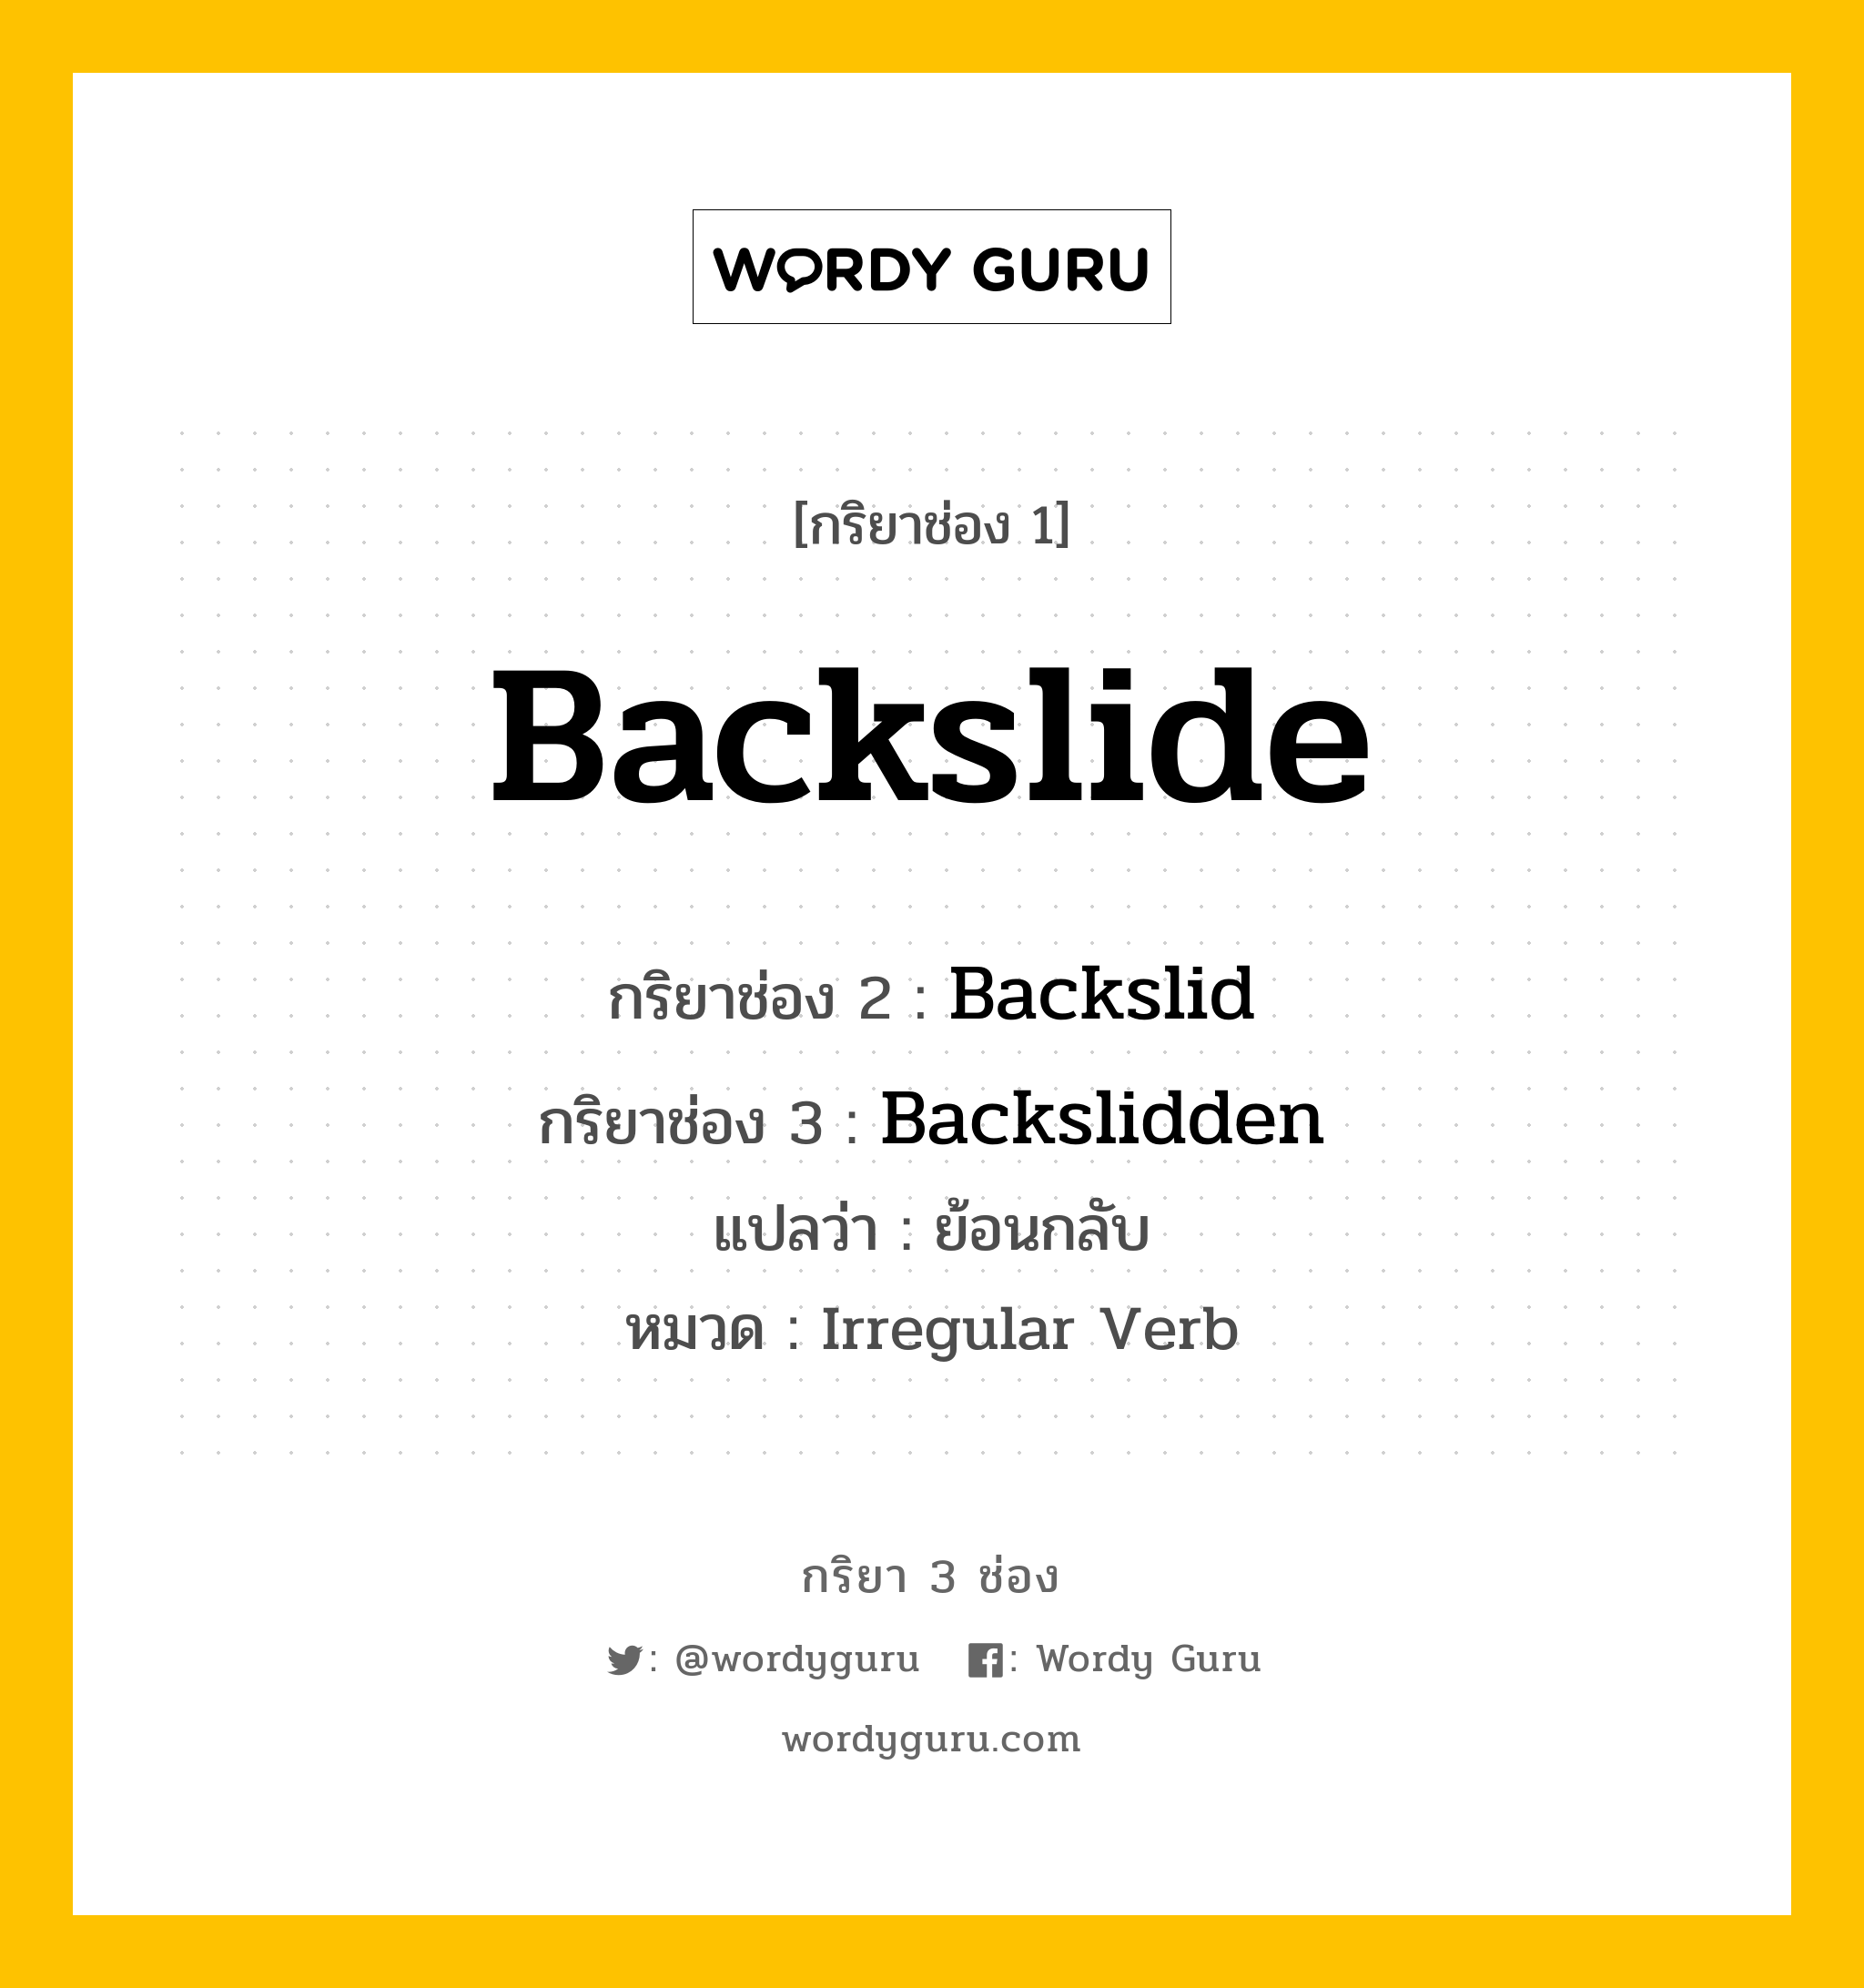 Backslide มีกริยา 3 ช่องอะไรบ้าง? คำศัพท์ในกลุ่มประเภท Irregular Verb, กริยาช่อง 1 Backslide กริยาช่อง 2 Backslid กริยาช่อง 3 Backslidden แปลว่า ย้อนกลับ หมวด Irregular Verb หมวด Irregular Verb